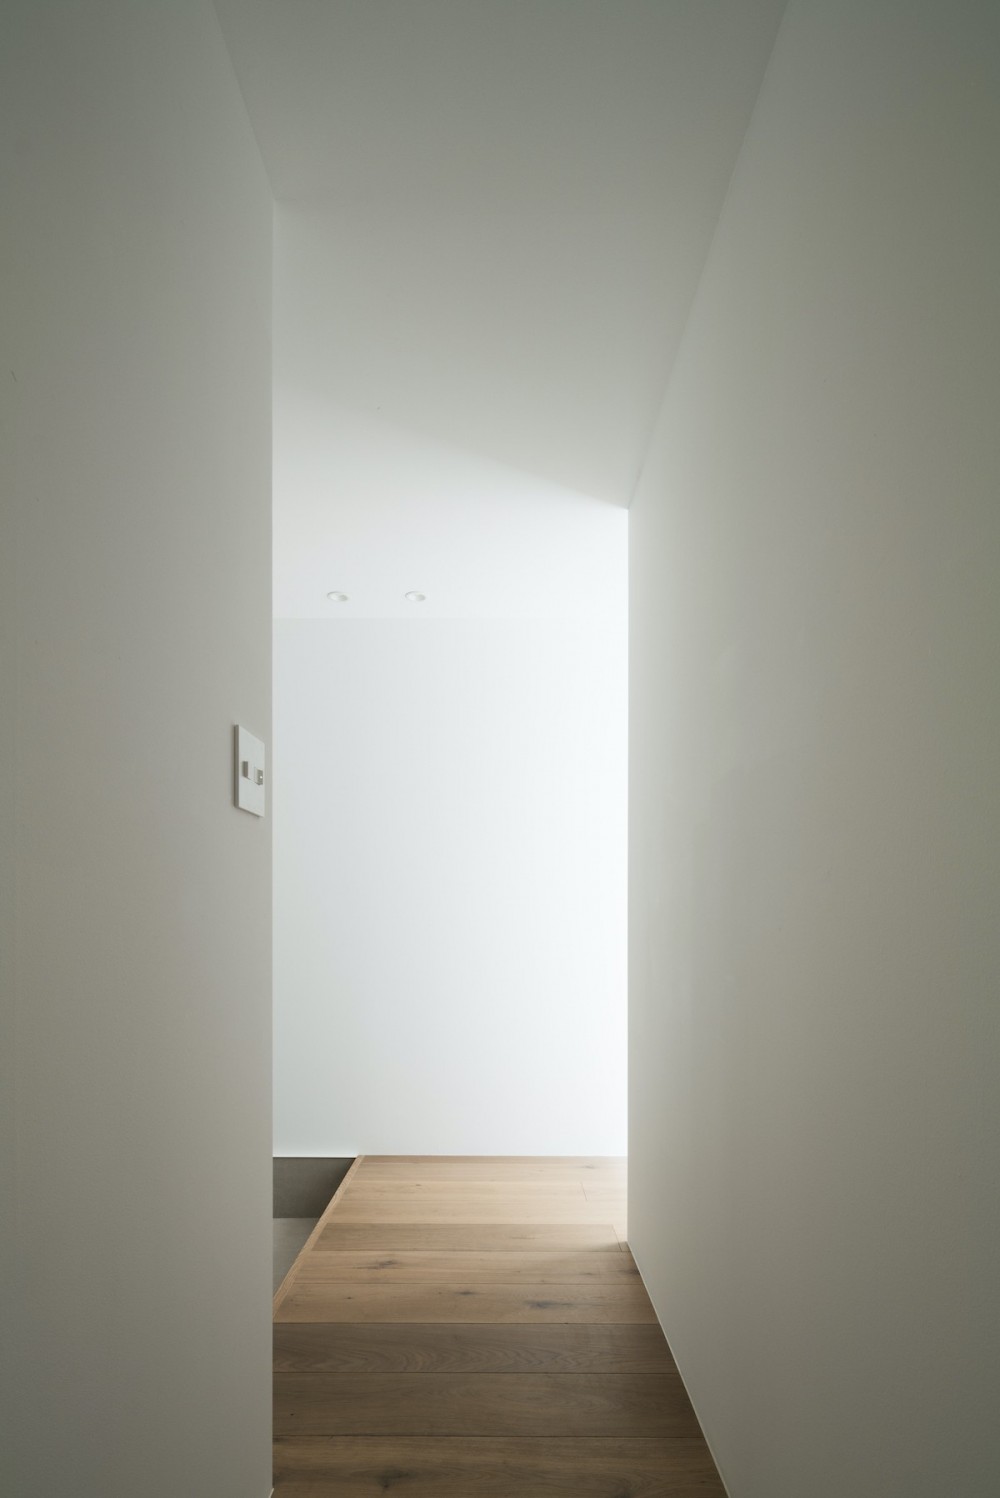 駒沢の家〜真っ白で明るいシンプルな家〜 (廊下)